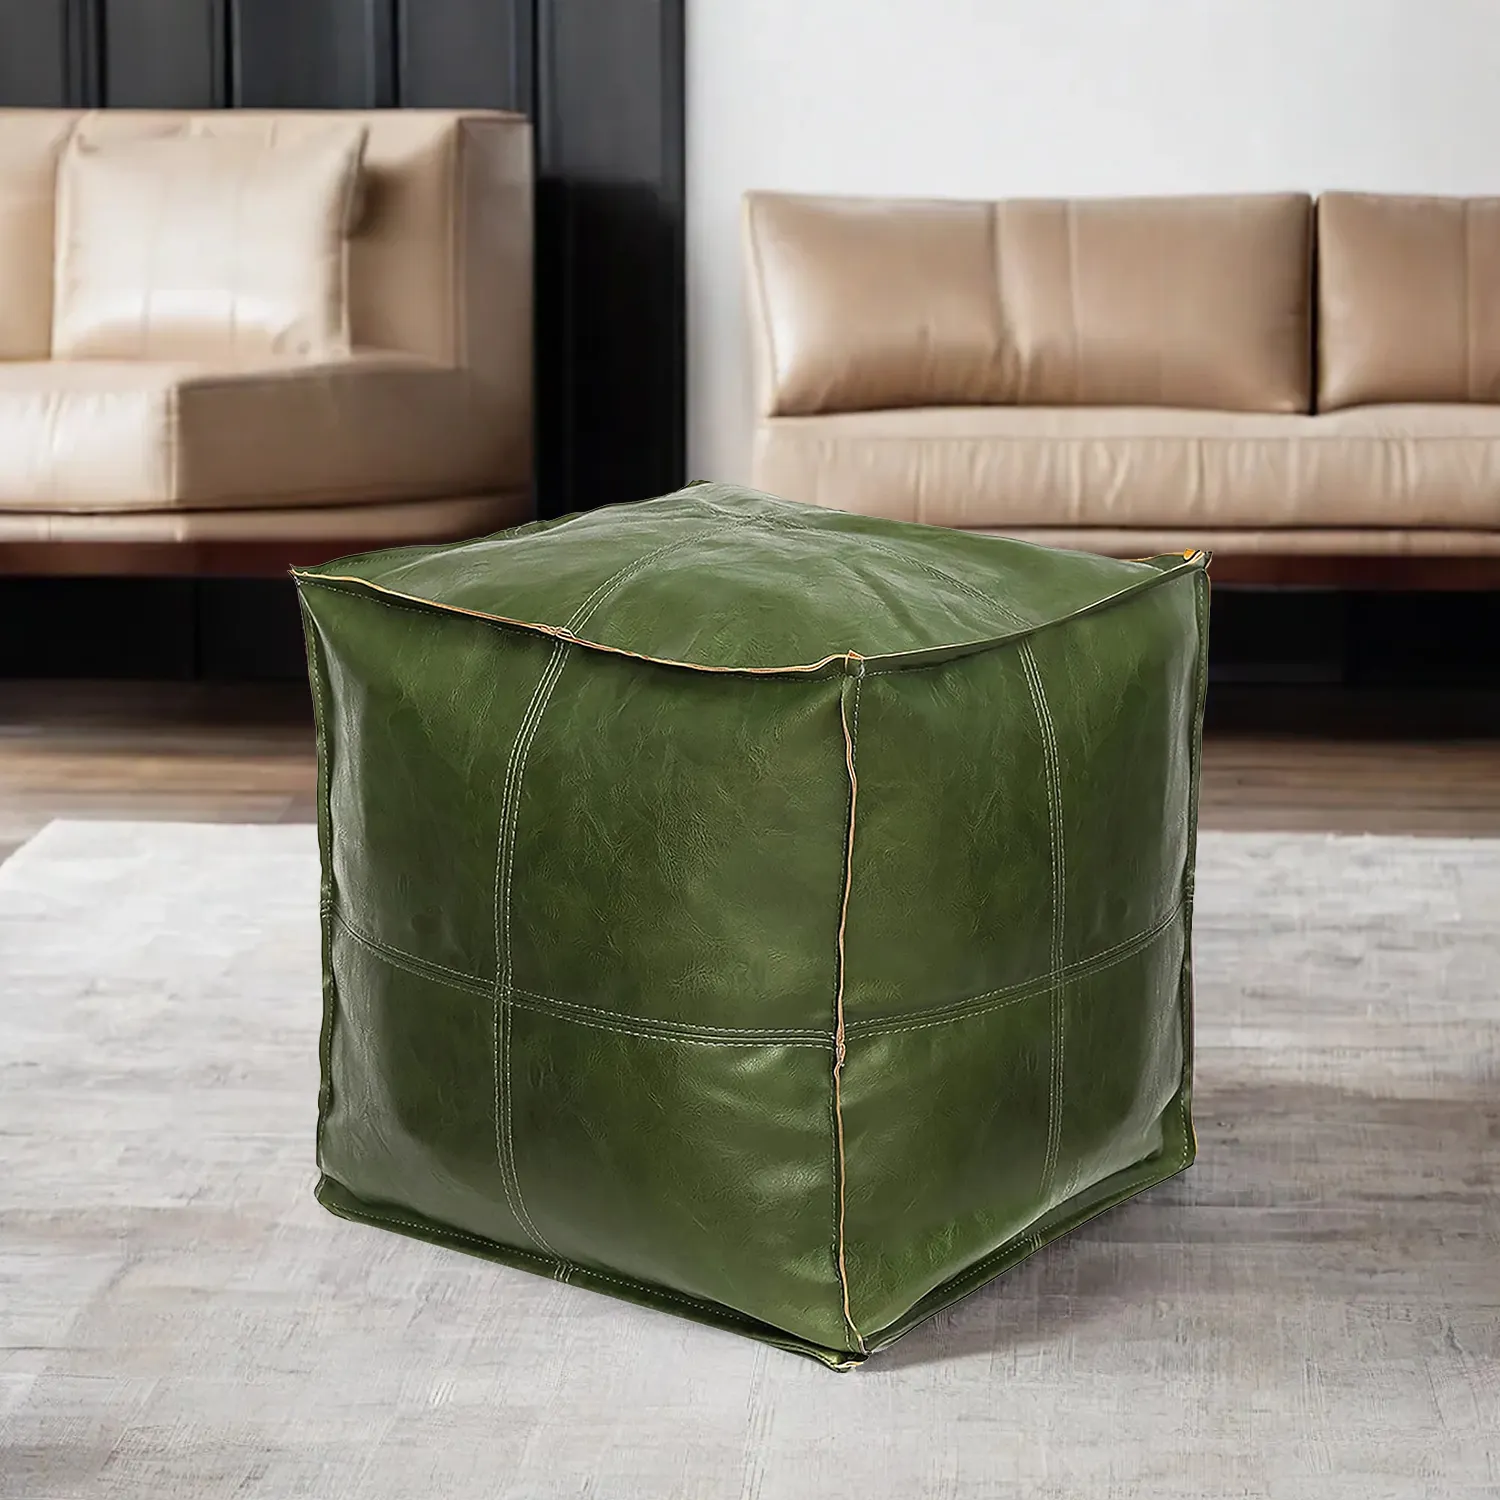 Pochete de couro para pés estofados, pouf europeu quadrado para sala de estar, capa de couro para pufe, ideal para uso em salão